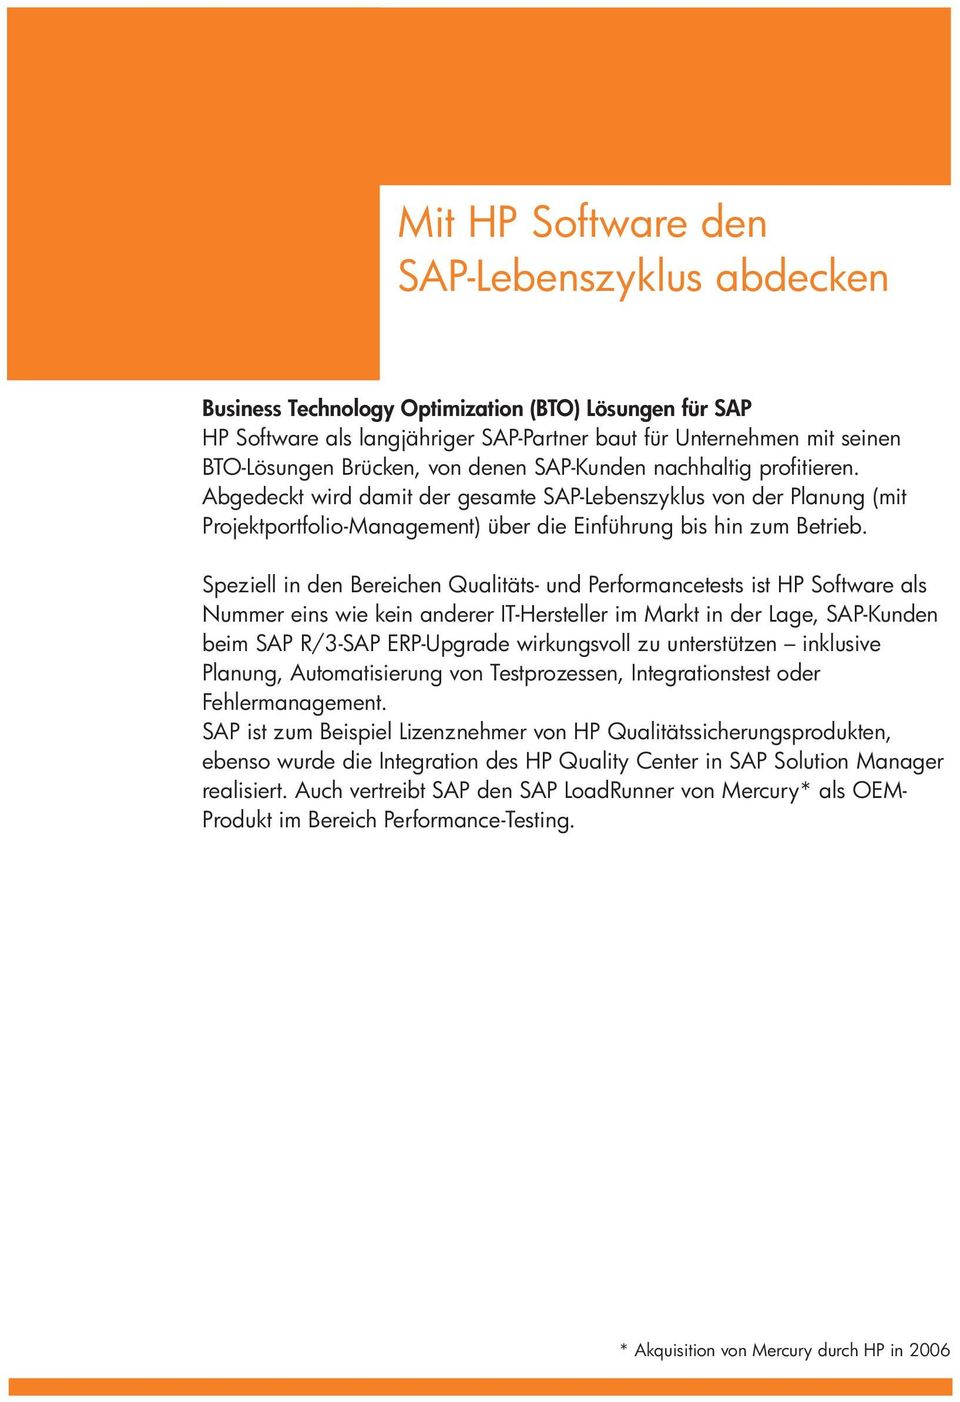 Speziell in den Bereichen Qualitäts- und Performancetests ist HP Software als Nummer eins wie kein anderer IT-Hersteller im Markt in der Lage, SAP-Kunden beim SAP R/3-SAP ERP-Upgrade wirkungsvoll zu